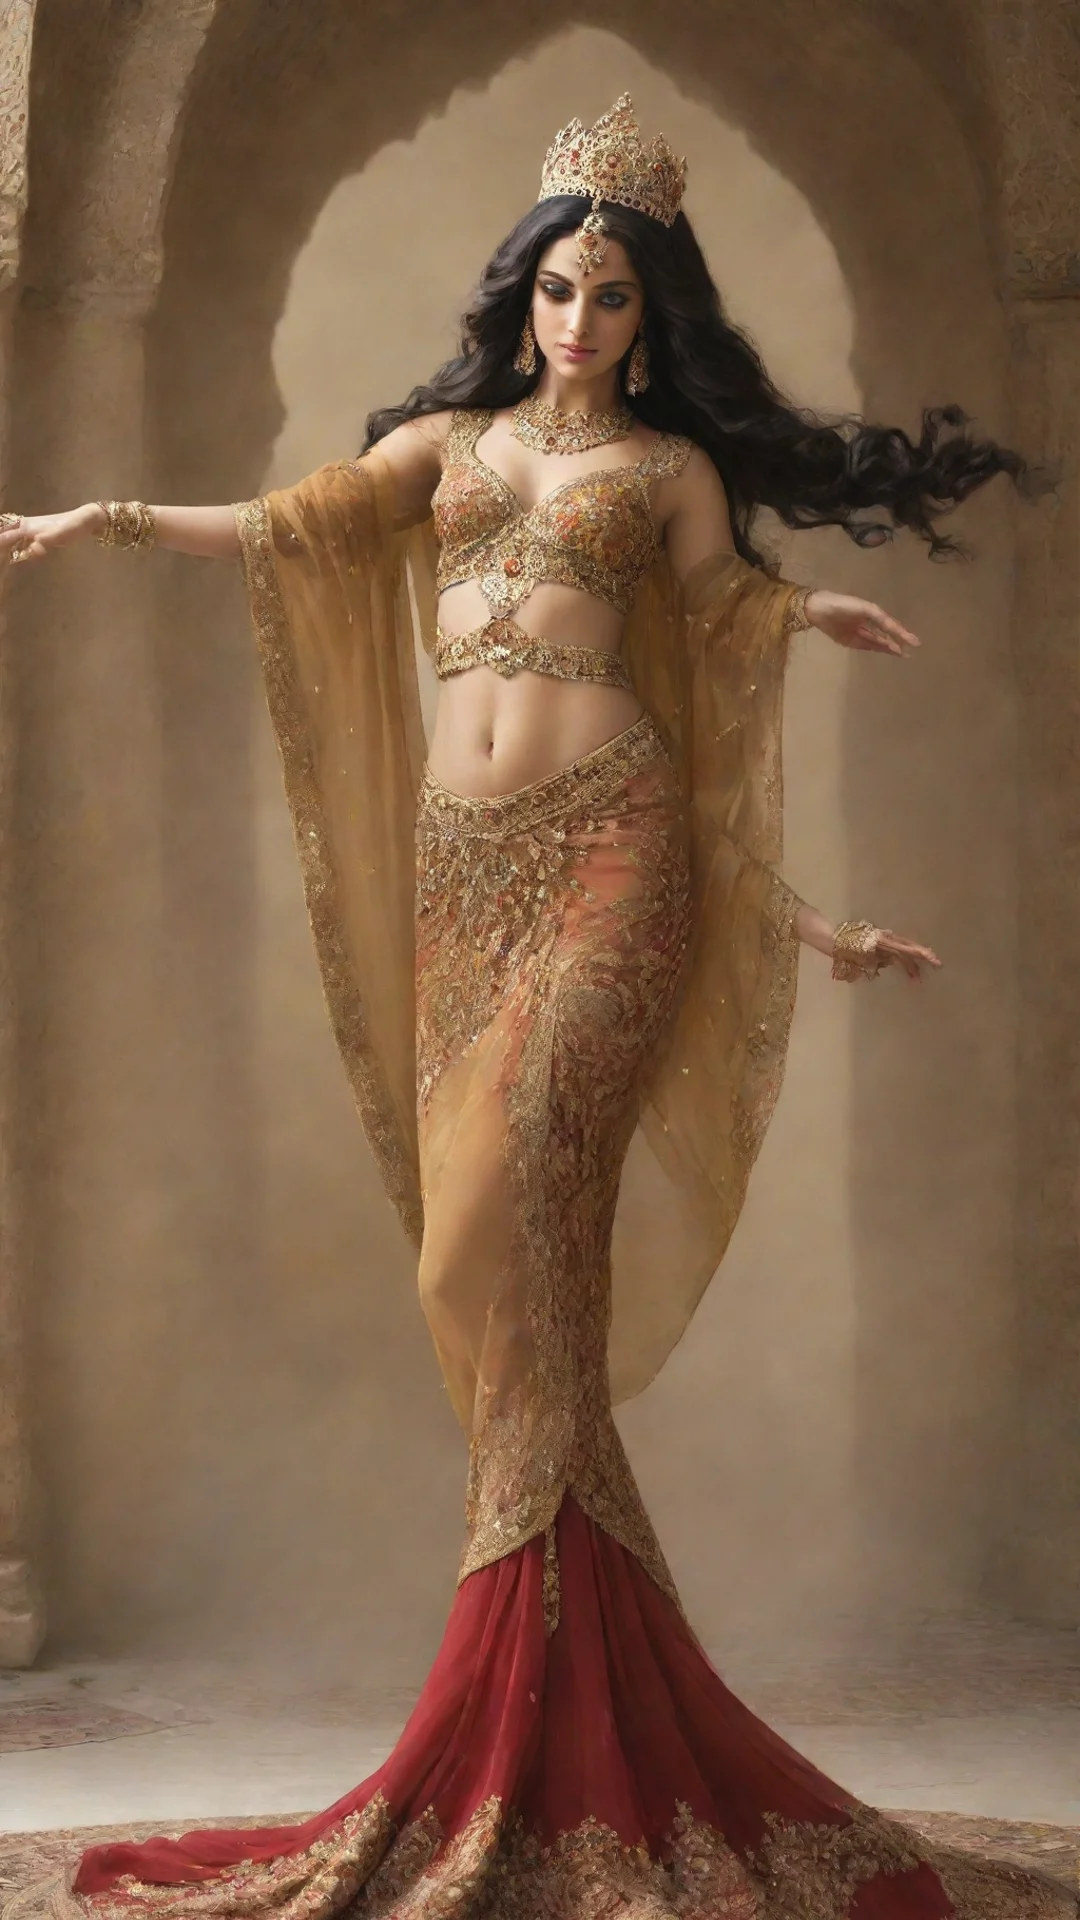 dancing persian queen tall